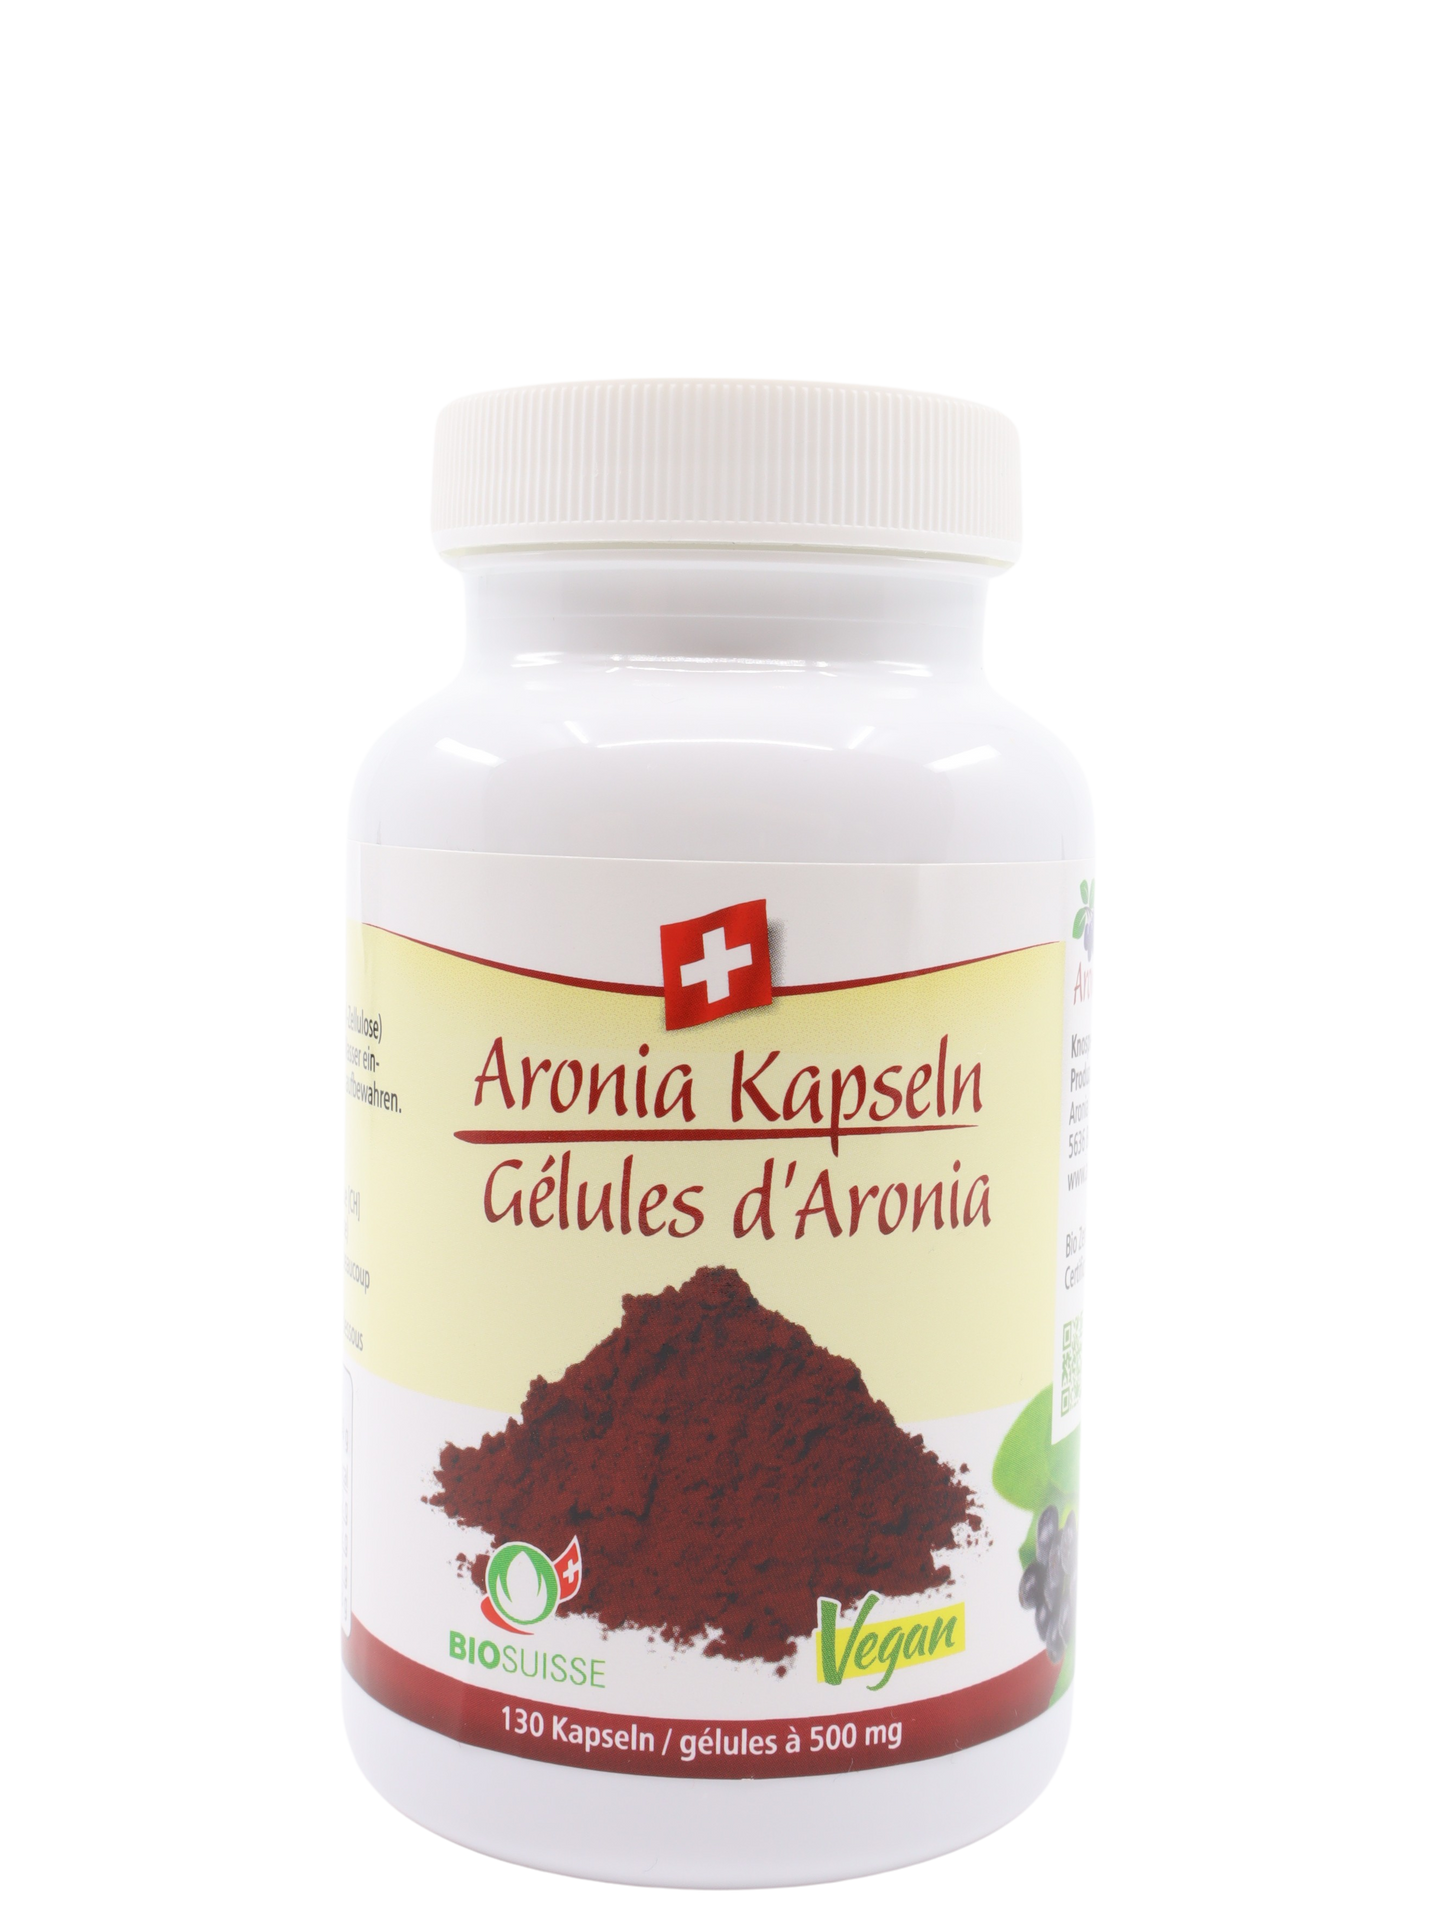 Aronia capsules organic, vegan, Switzerland (OPC)